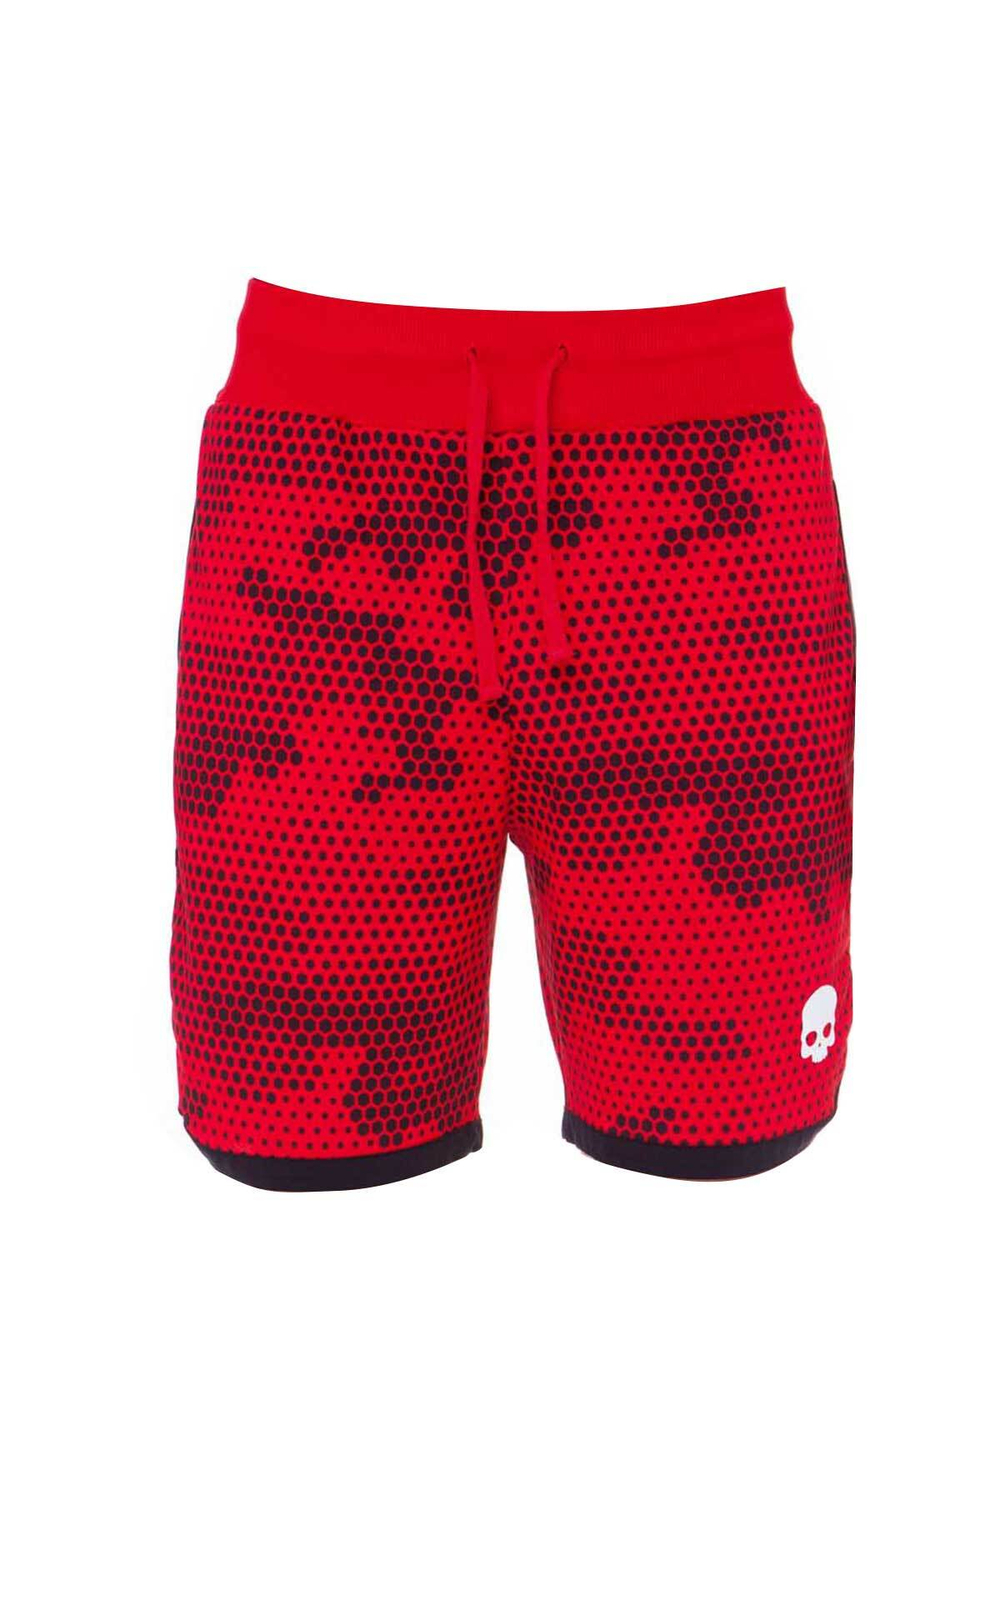 Теннисные шорты HYDROGEN Tech Camo - red camouflage (T00127-B40)